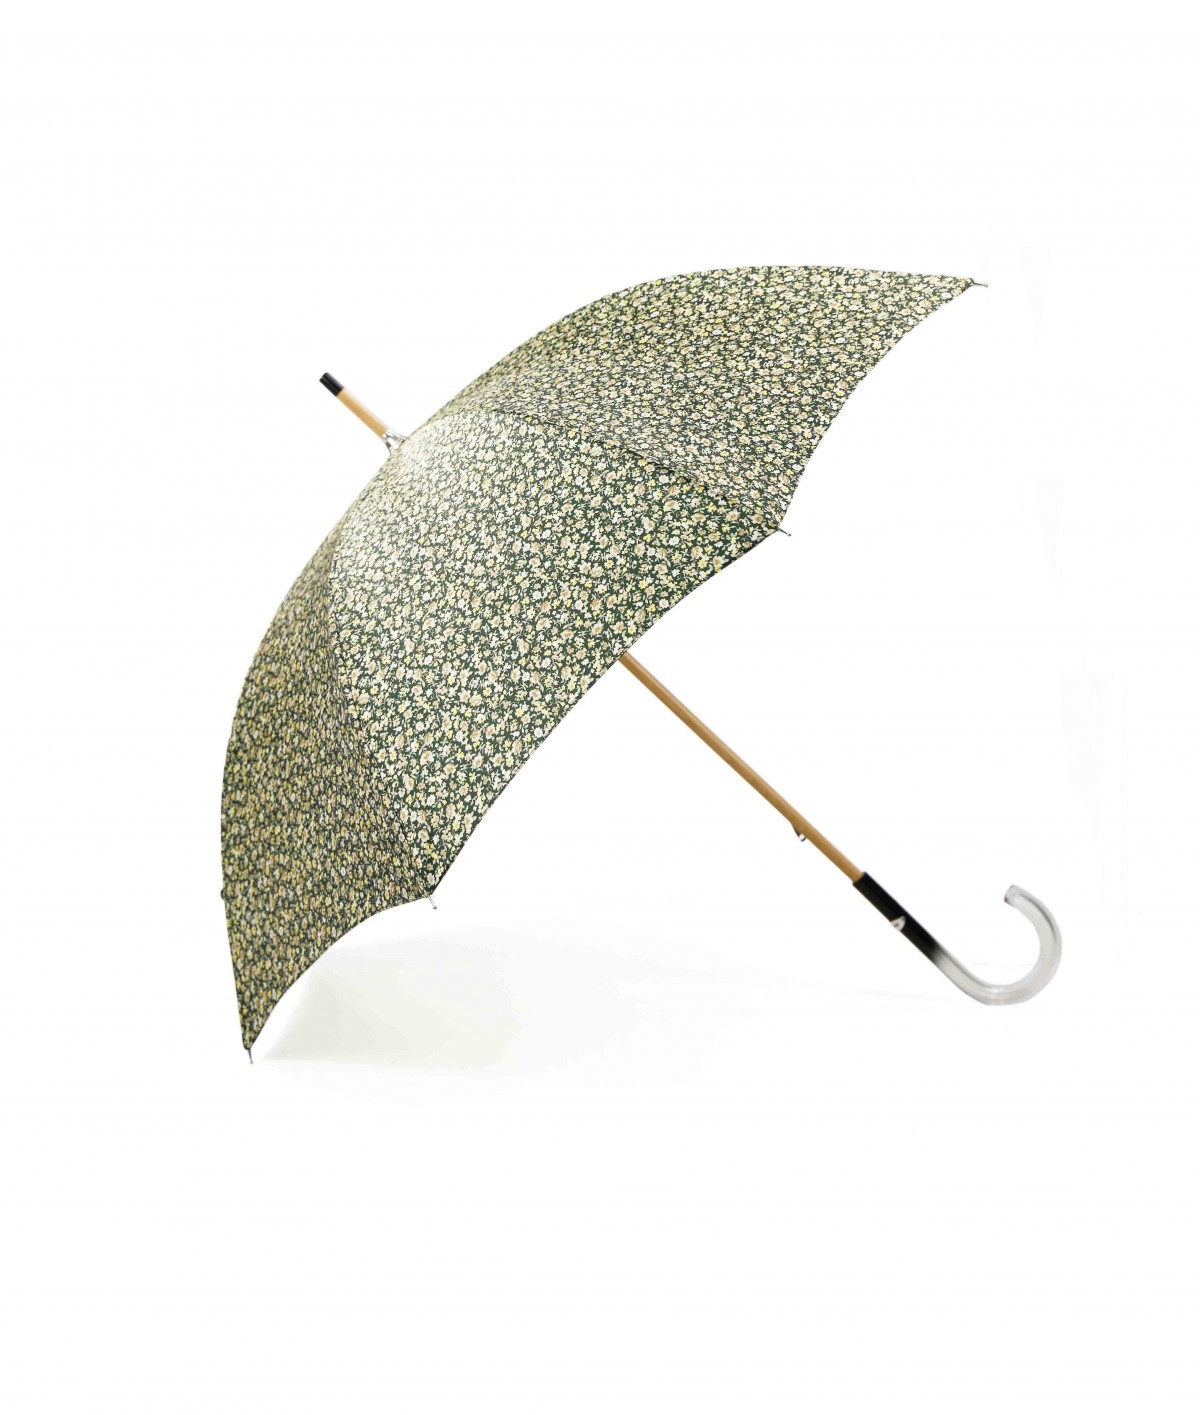 → Parapluie Satin Imprimé Fantaisie - Long Manuel N°22 - Made in France par Maison Pierre Vaux Fabricant Français de Parapluie